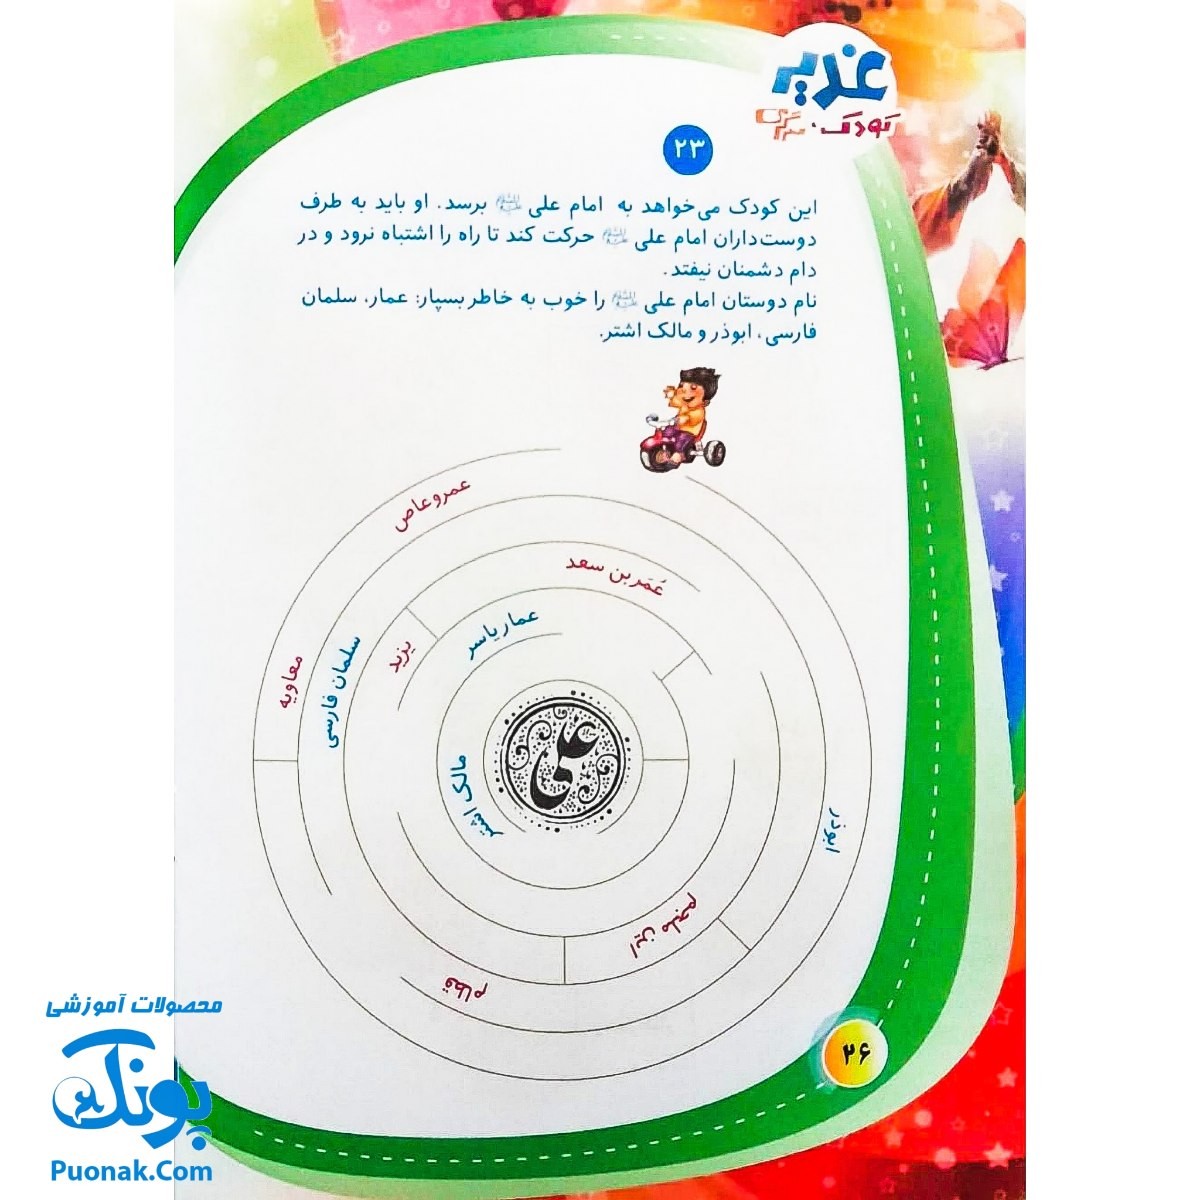 کتاب غدیر ، کودک ، سرگرمی : آشنایی کودکان با واقعه ی غدیرخم به شیوه مسابقه و سرگرمی